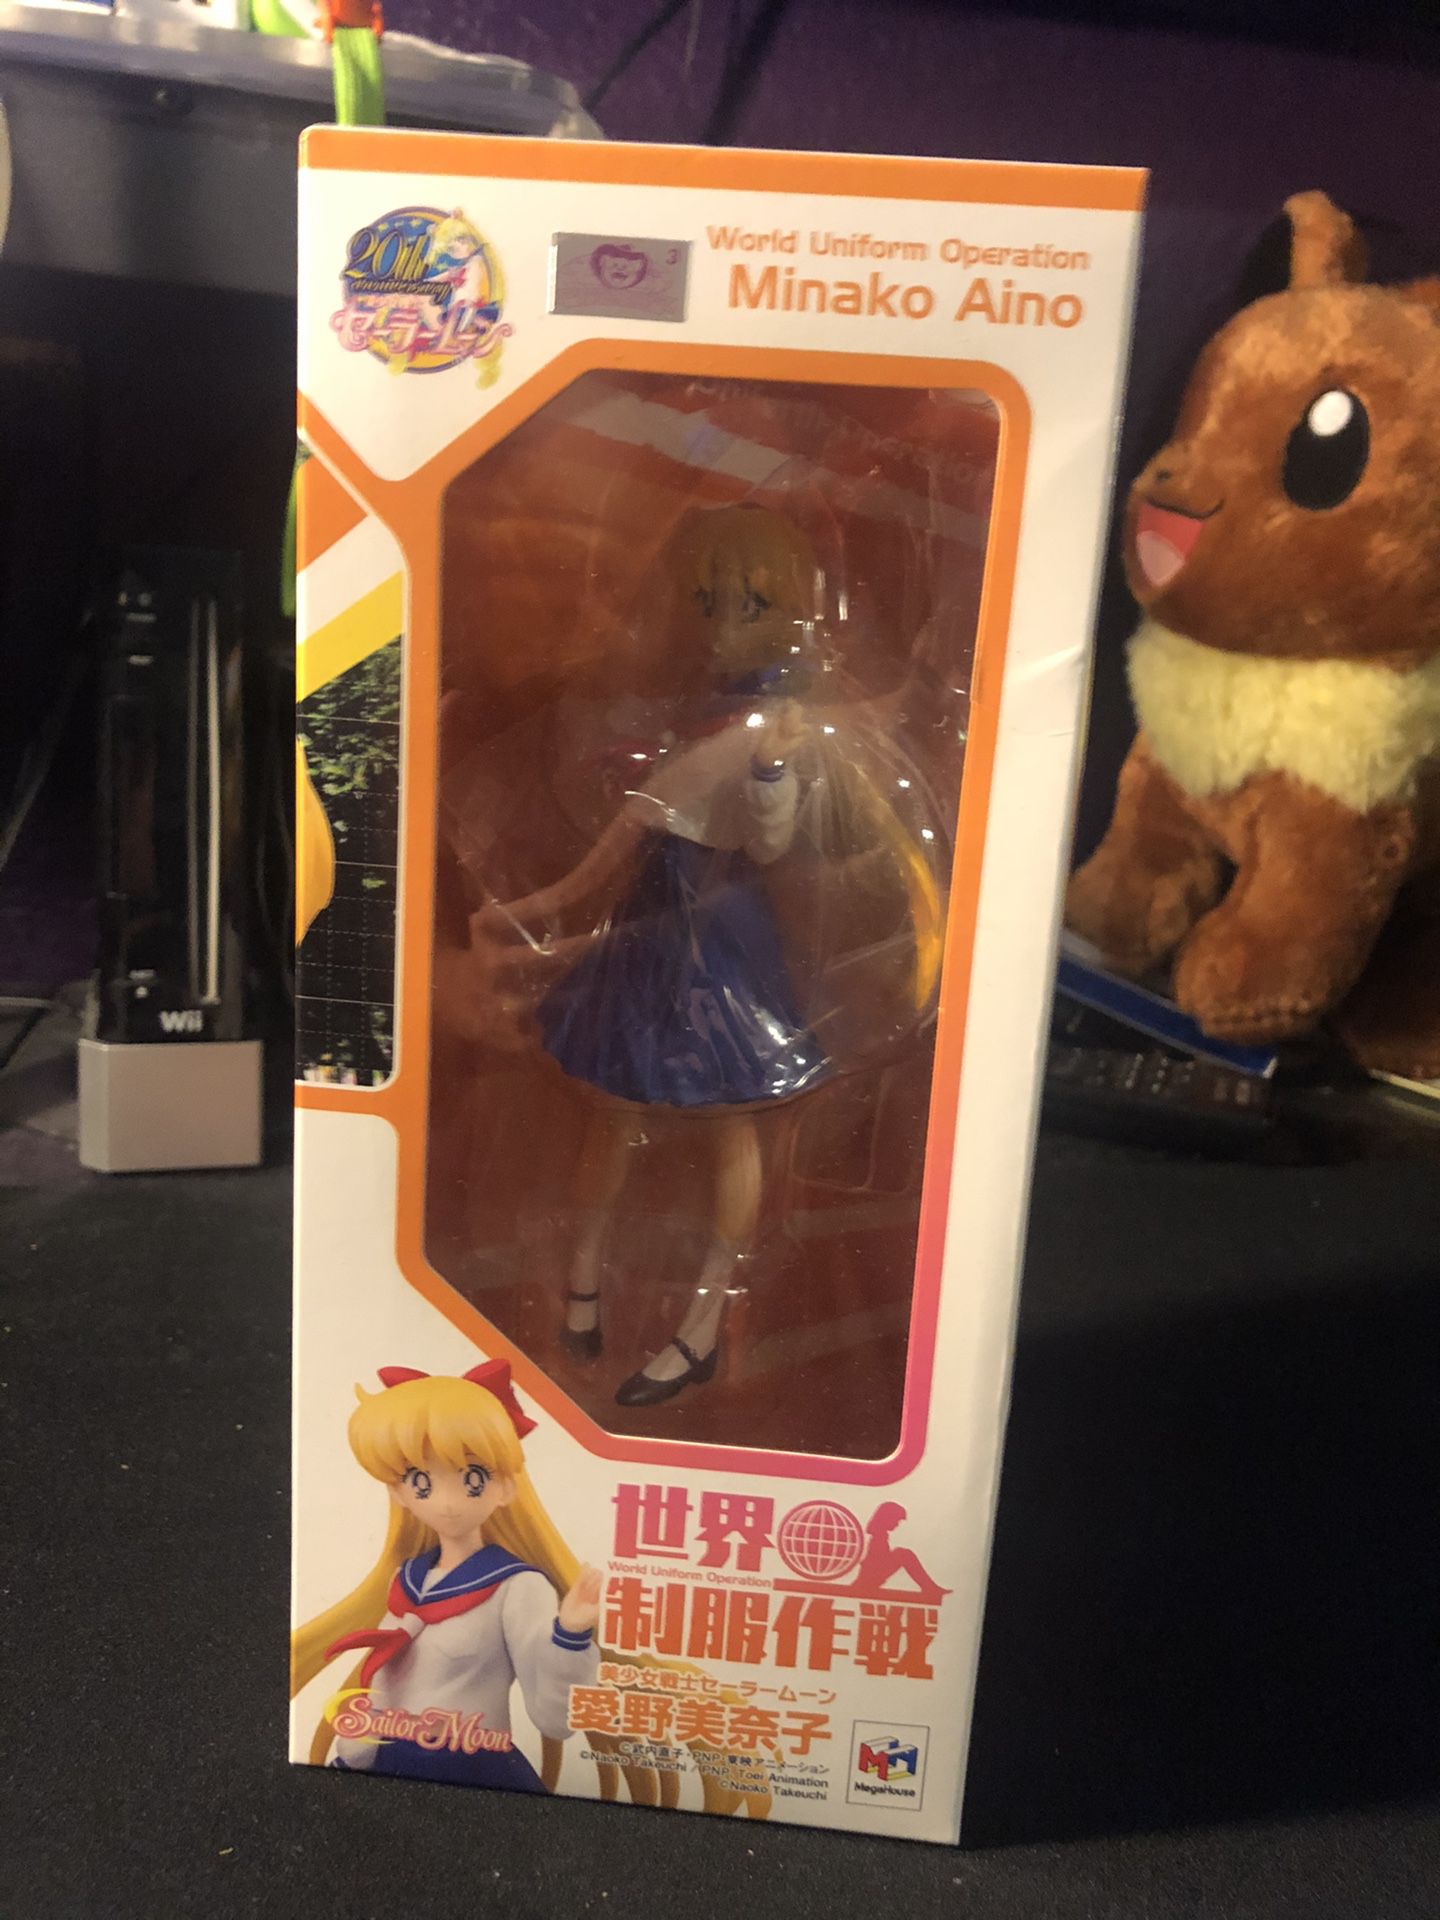 Sailor moon Minako Aino statue